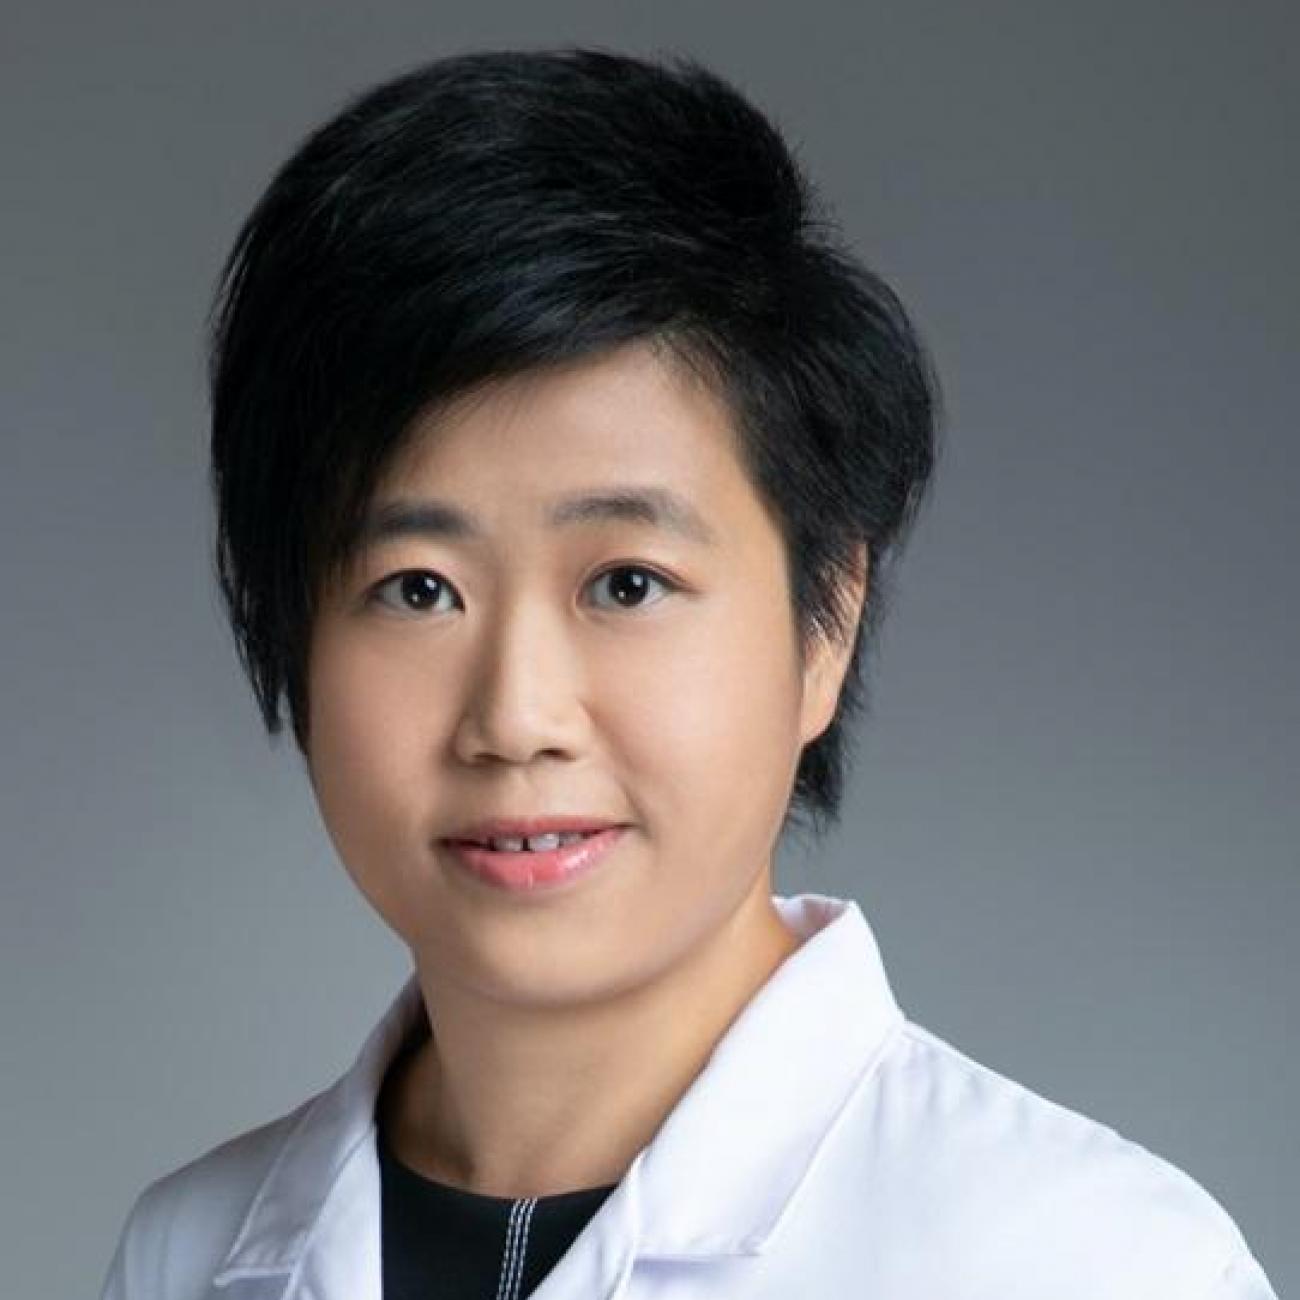 Doctor Wing Yee Karen Yuen